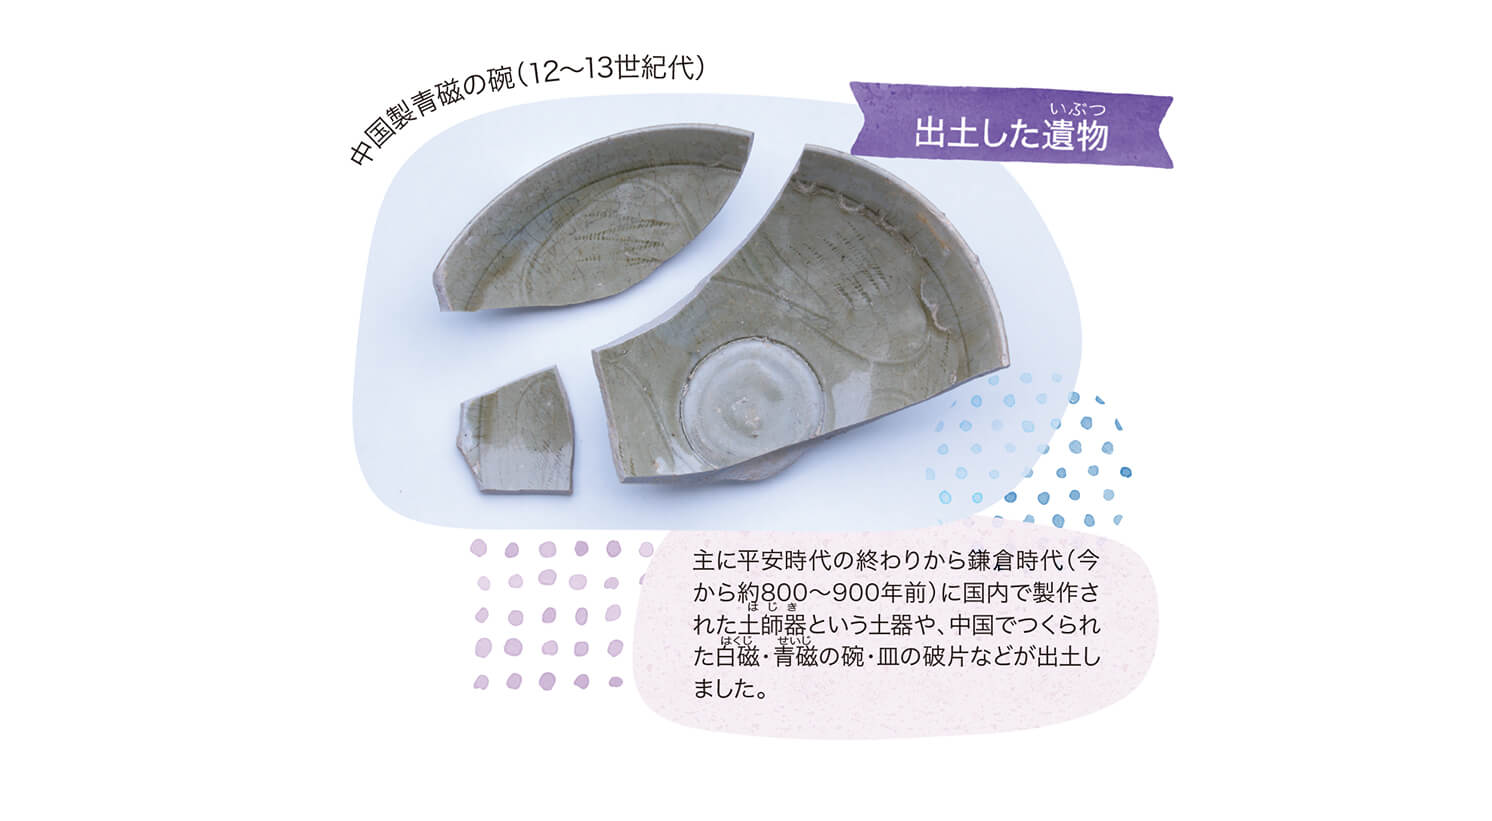 主に平安時代の終わりから鎌倉時代（今から約800～900年前）に国内で製作された土師器という土器や、中国でつくられた白磁・青磁の碗・皿の破片などが出土しました。